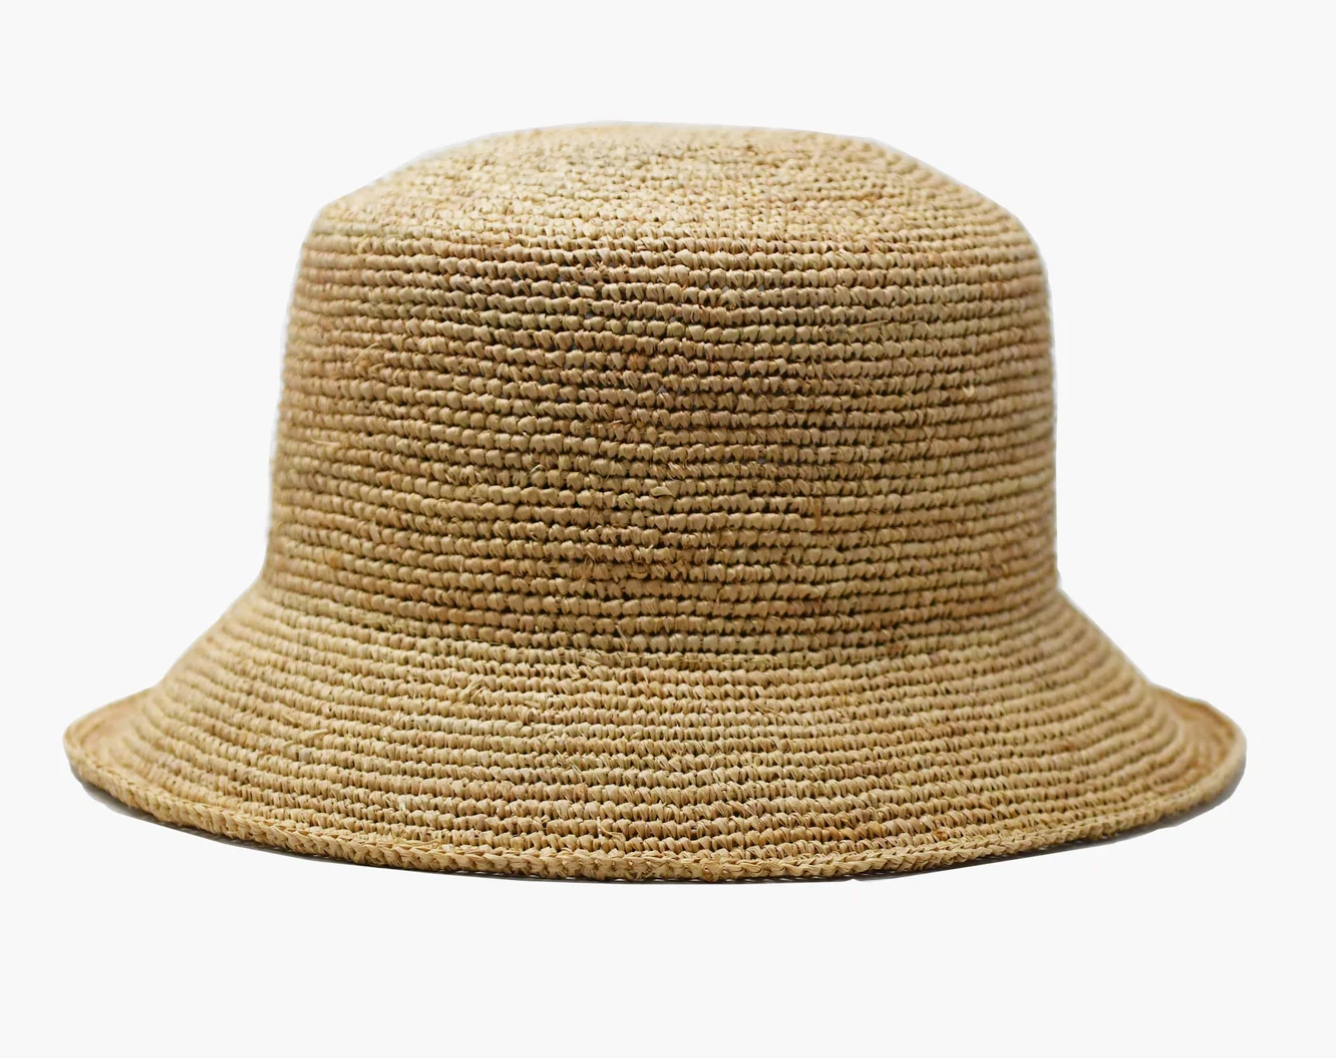 Aden Beach Bucket Hat in Natural